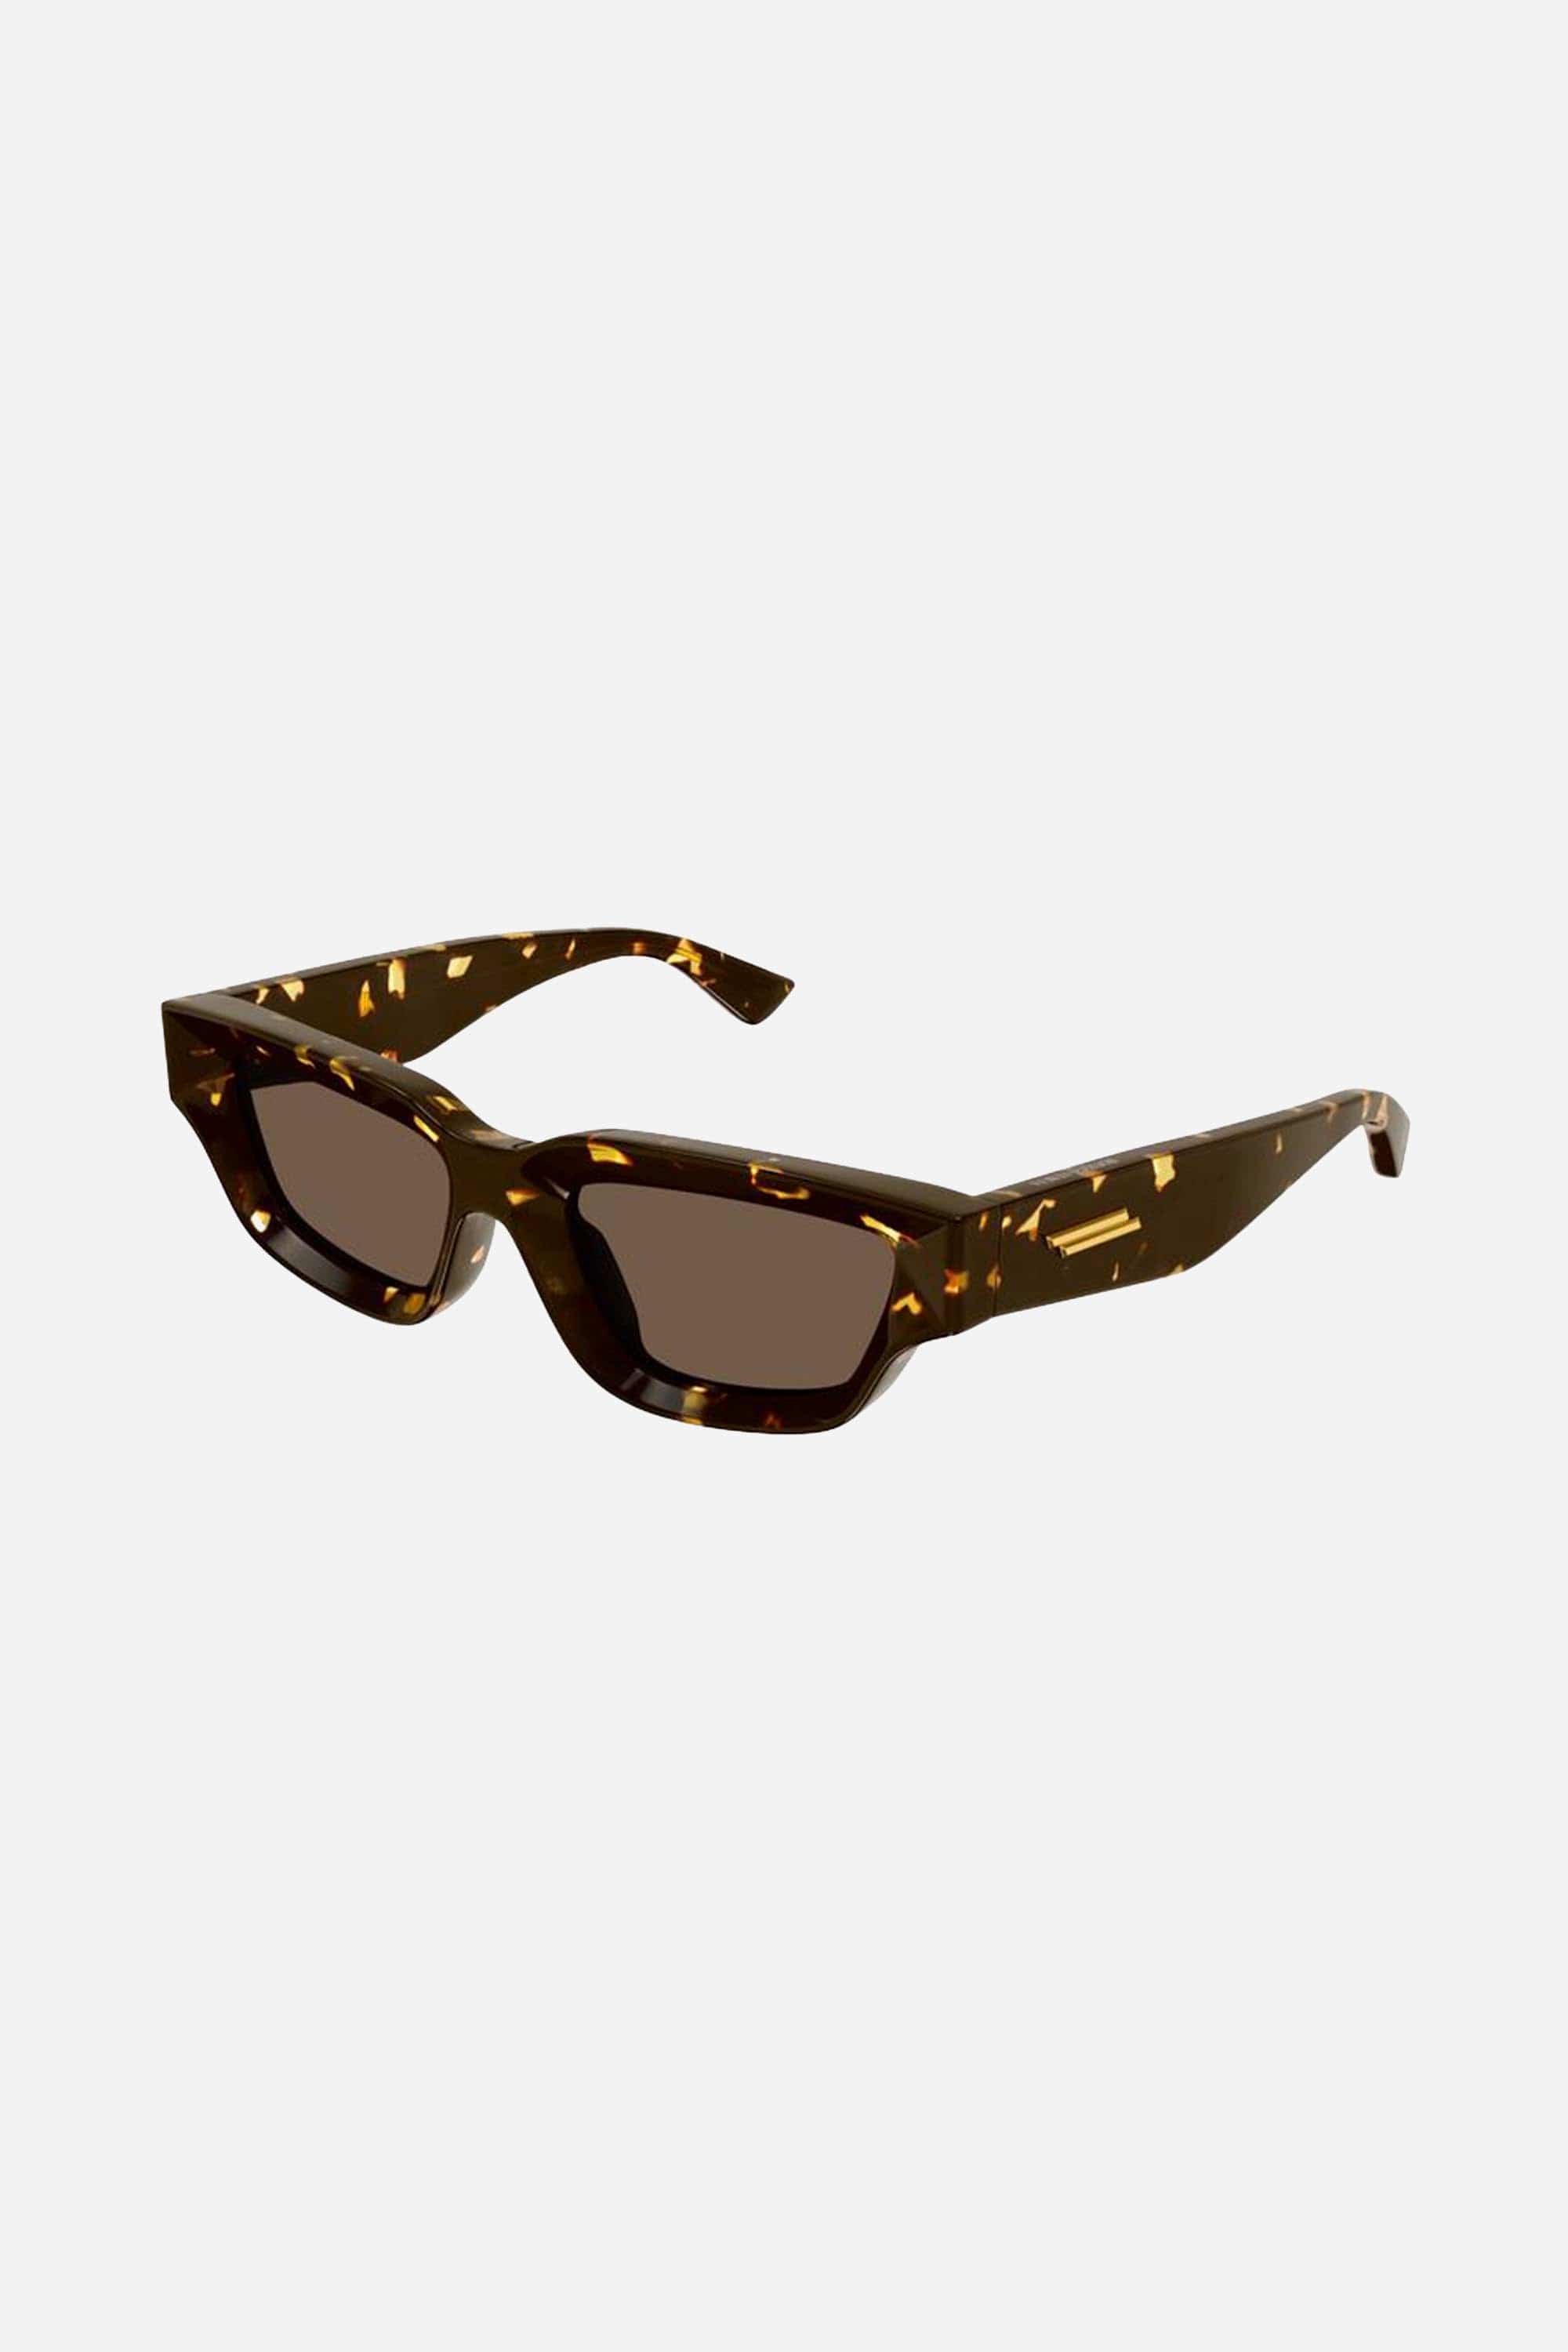 Bottega Veneta micro rectangular havana sunglasses - Eyewear Club